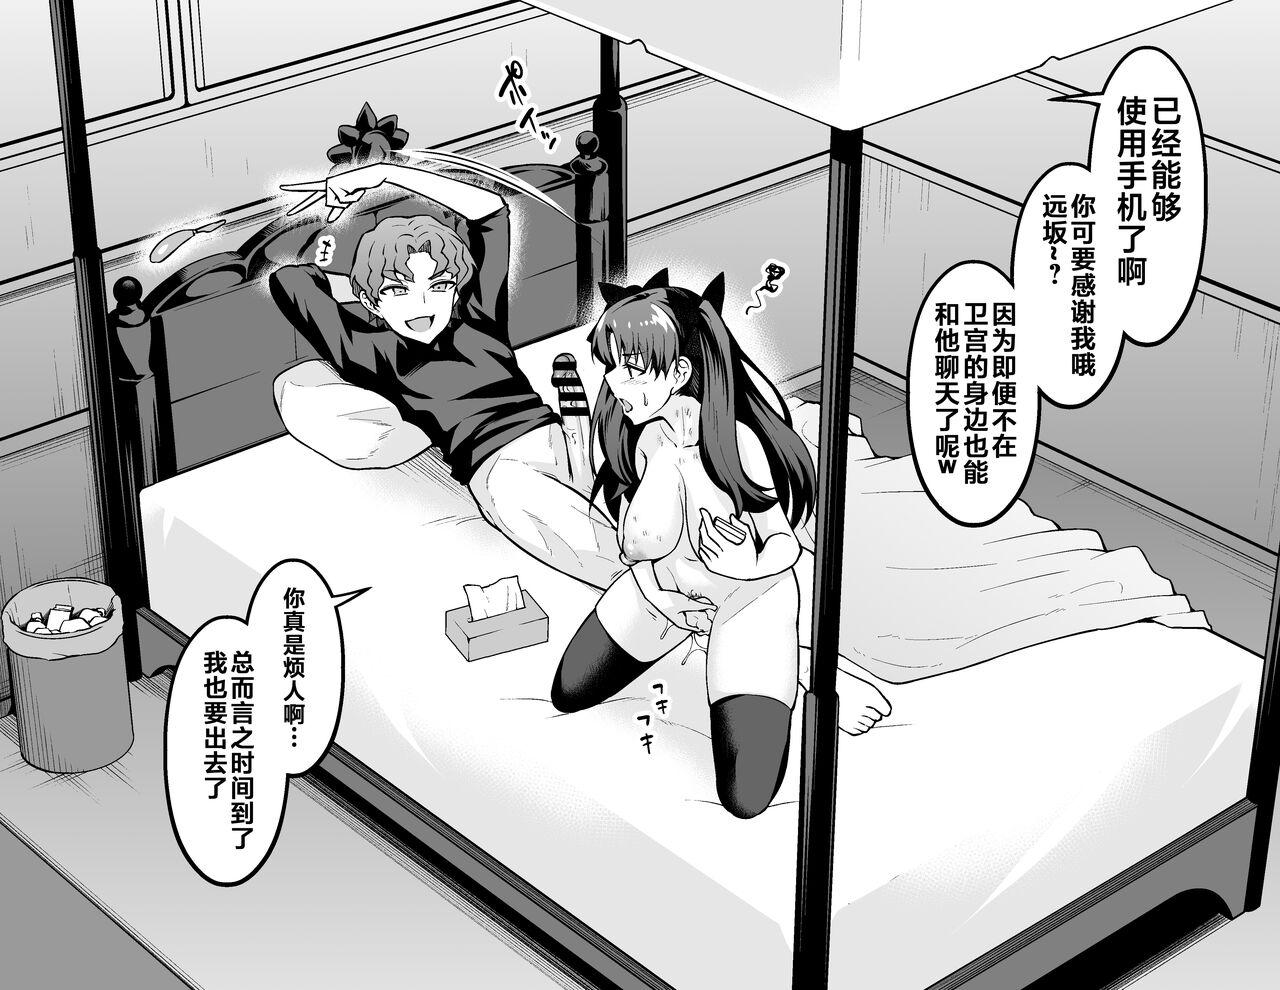 Ex Girlfriends Tosakarin, shinji to uwaki sekkusu suru - Fate grand order Fate stay night Hot Girls Getting Fucked - Picture 3